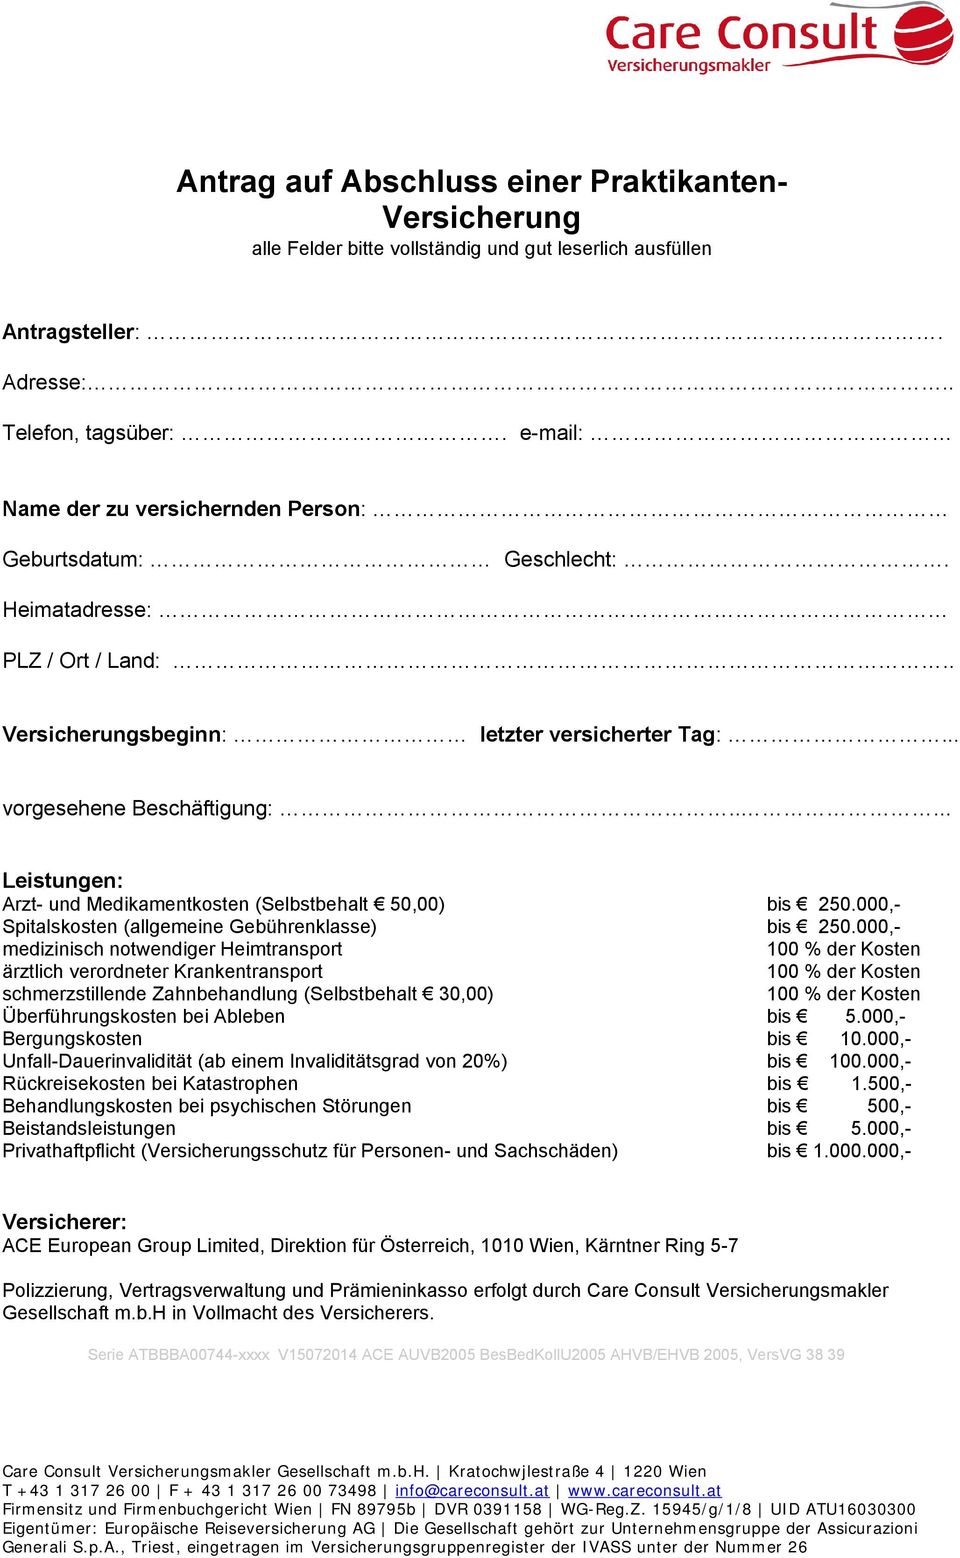 .... Leistungen: Arzt- und Medikamentkosten (Selbstbehalt 50,00) bis 250.000,- Spitalskosten (allgemeine Gebührenklasse) bis 250.